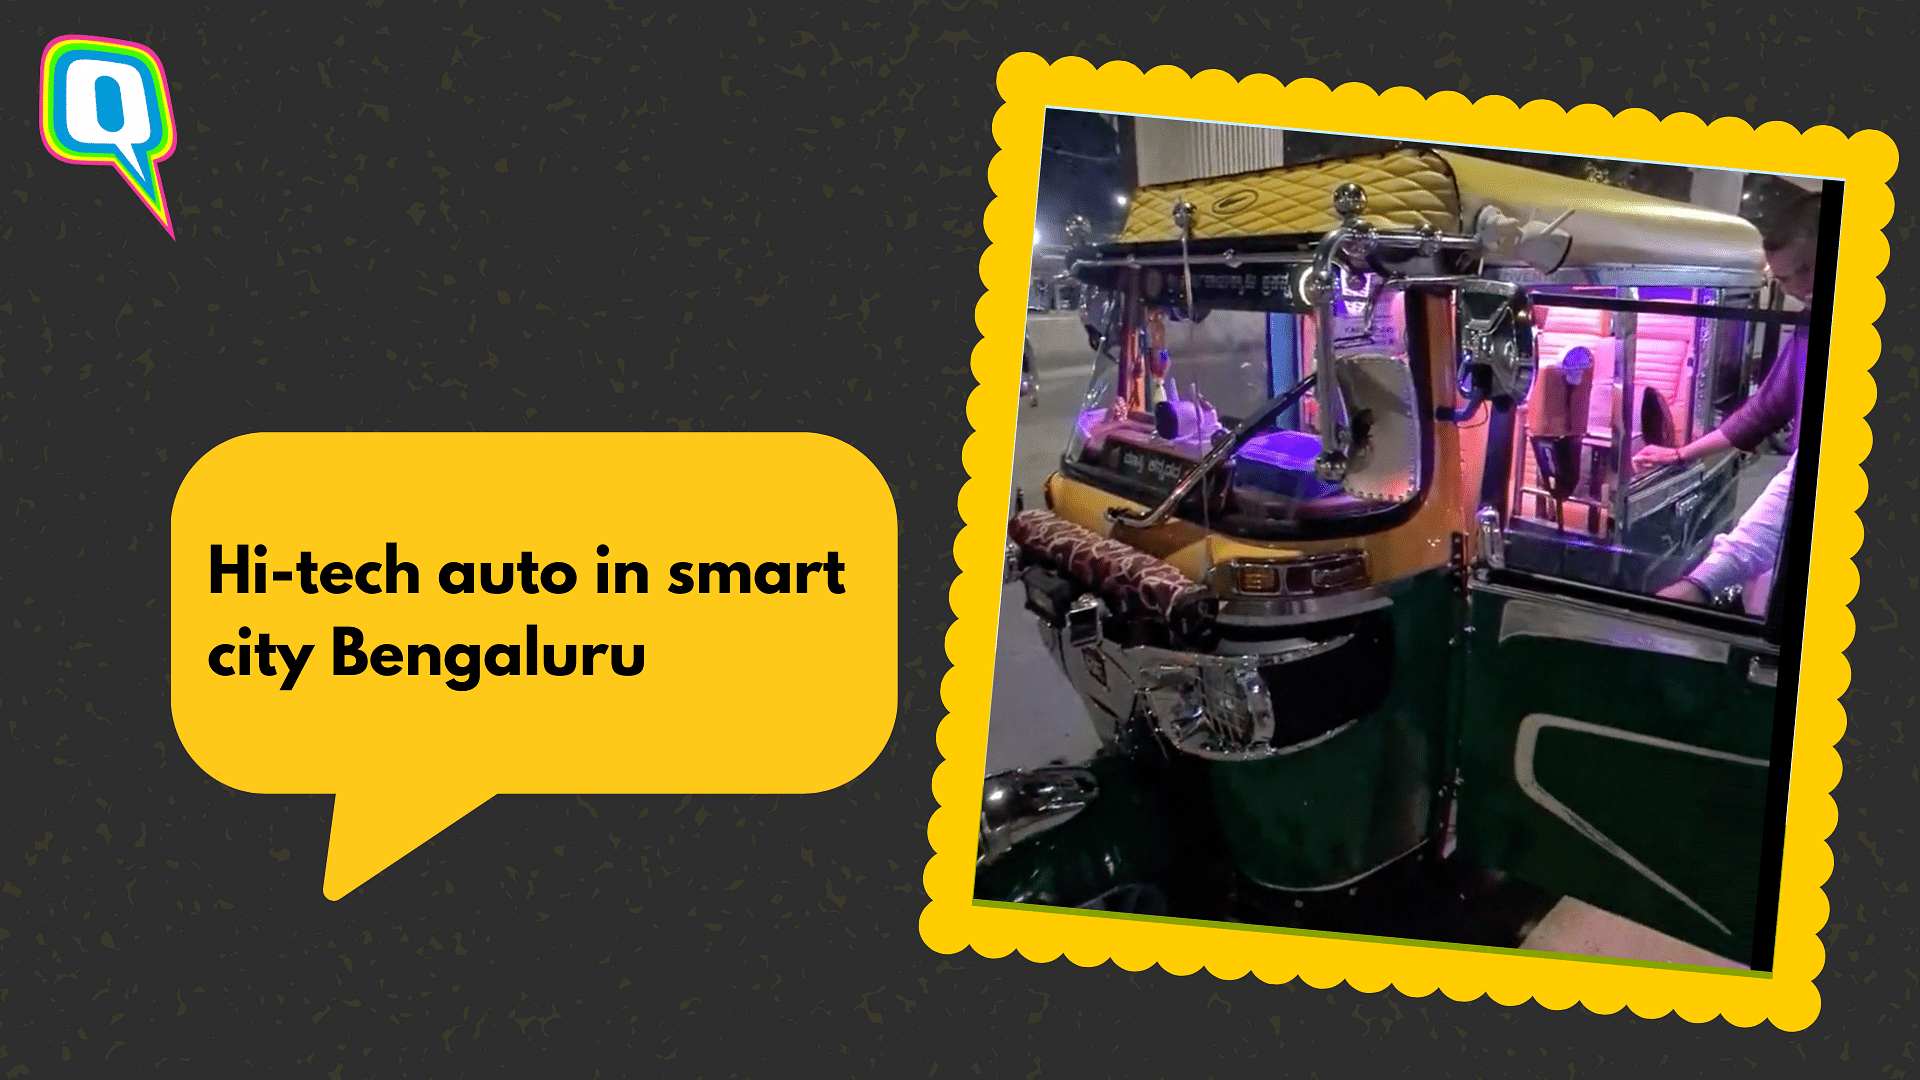 <div class="paragraphs"><p>Bengaluru auto has impressed the netizens</p></div>